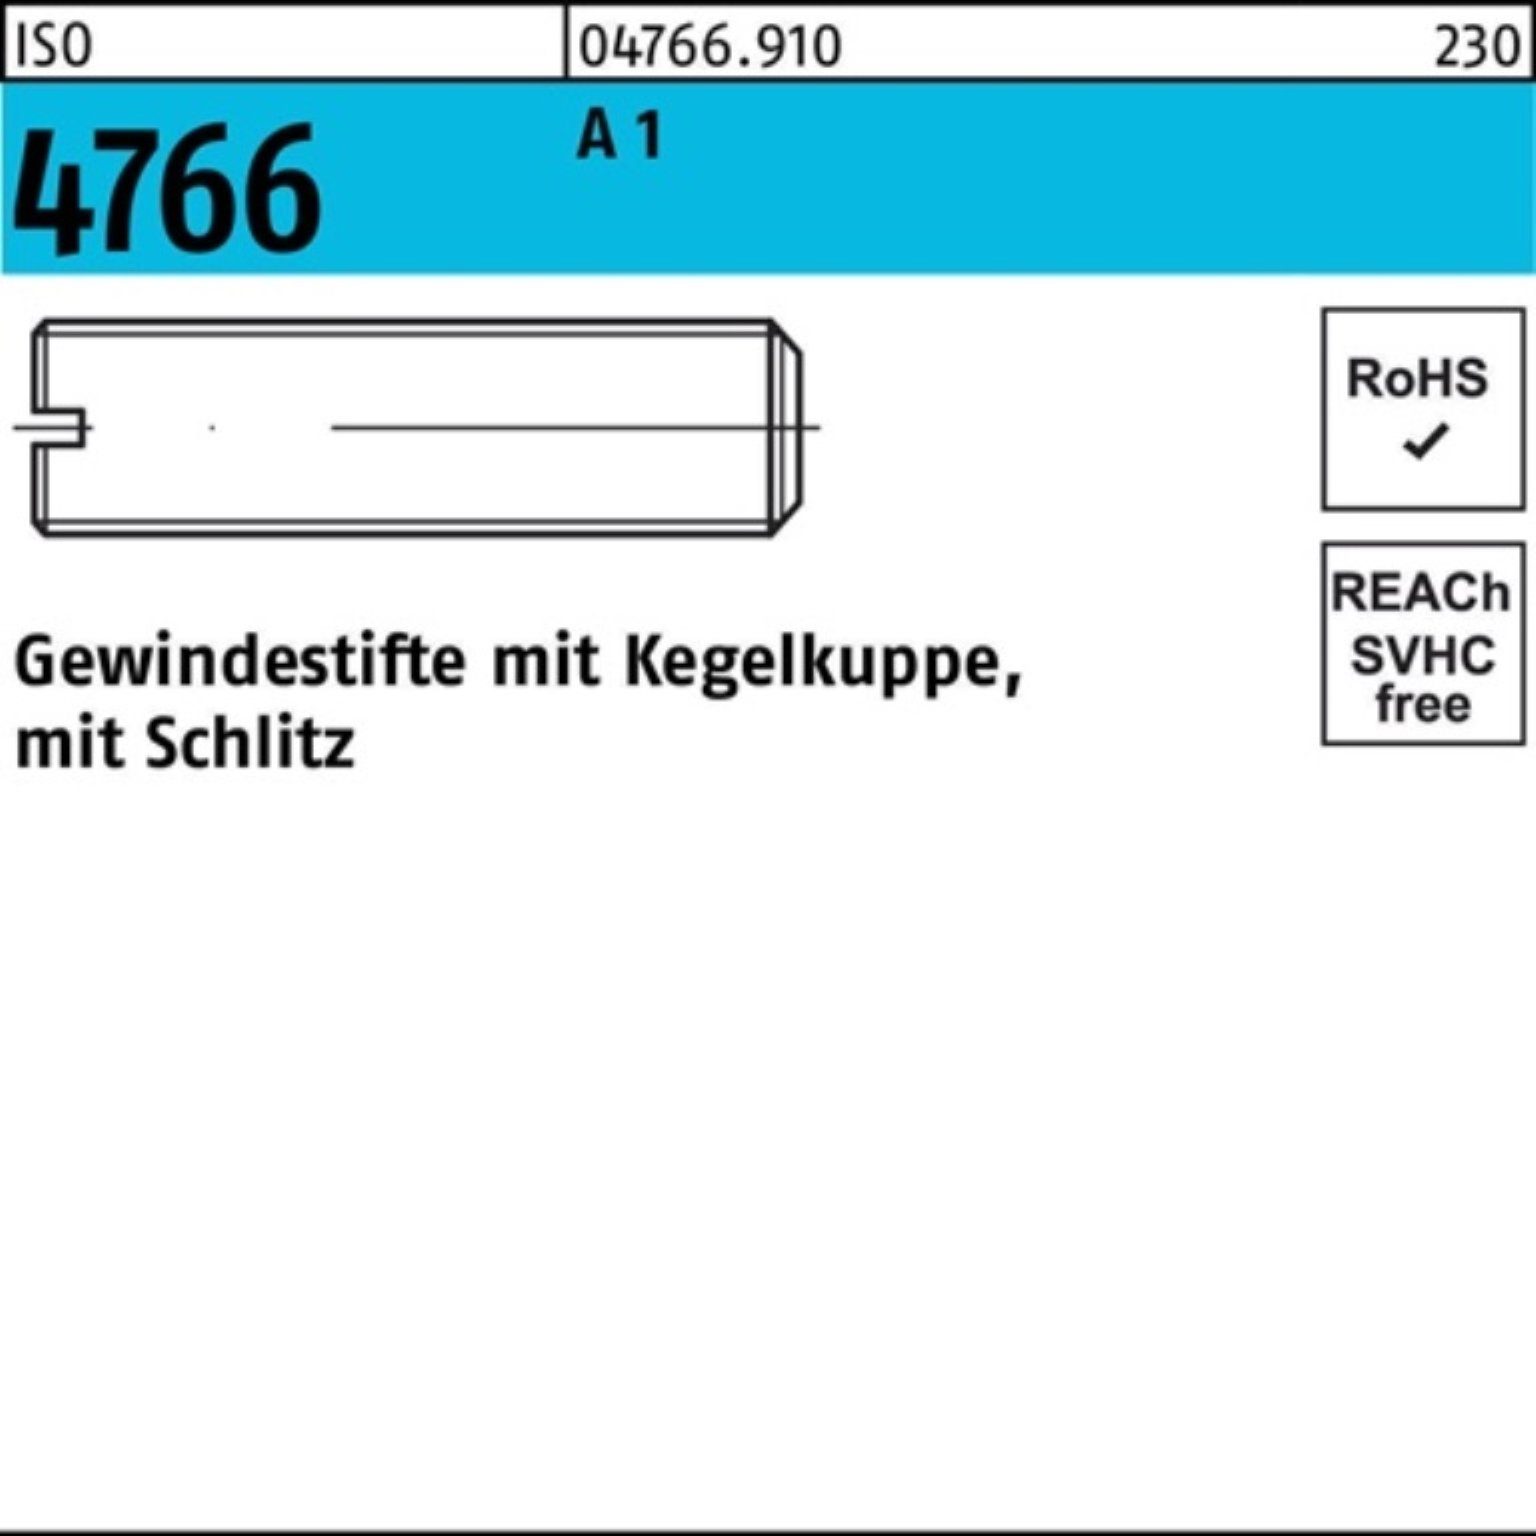 Reyher Gewindebolzen Stüc A 100er Pack Gewindestift Kegelkuppe/Schlitz 50 M4x 1 4766 8 ISO